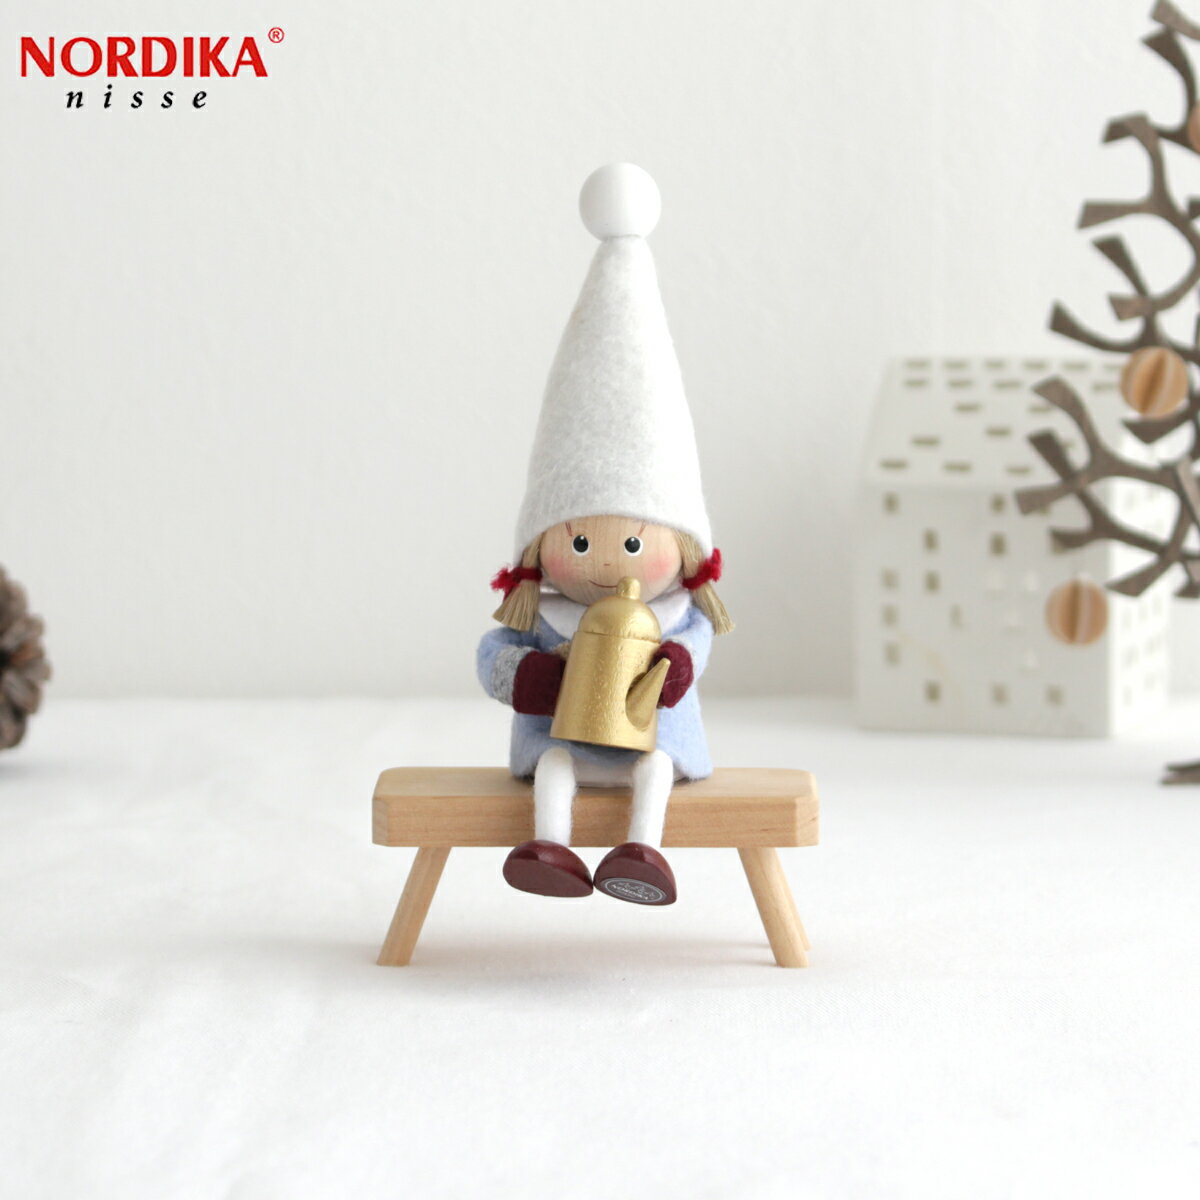 【クーポン対象 11/13 10:59まで】 ノルディカニッセ ポットを持った女の子 星に願いを シリーズ NORDIKA nisse クリスマス 雑貨 木製 人形 北欧 NRD120674